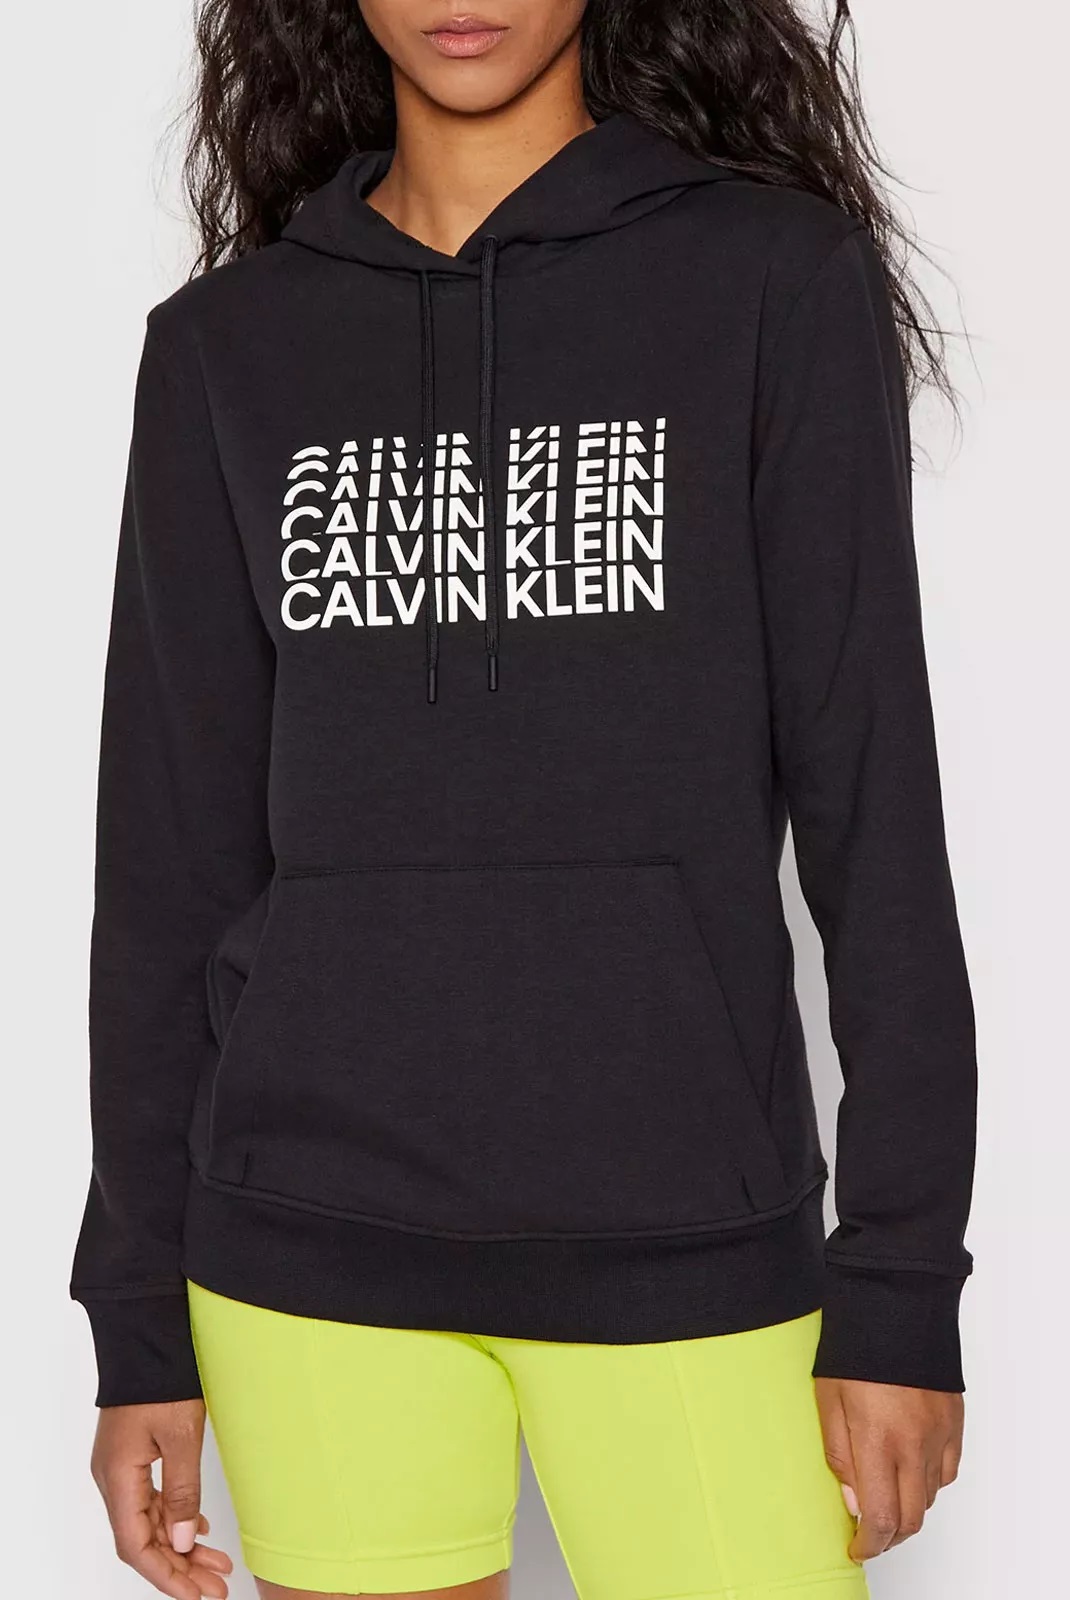 Calvin Klein dámská mikina s kapucí černá Velikost: M